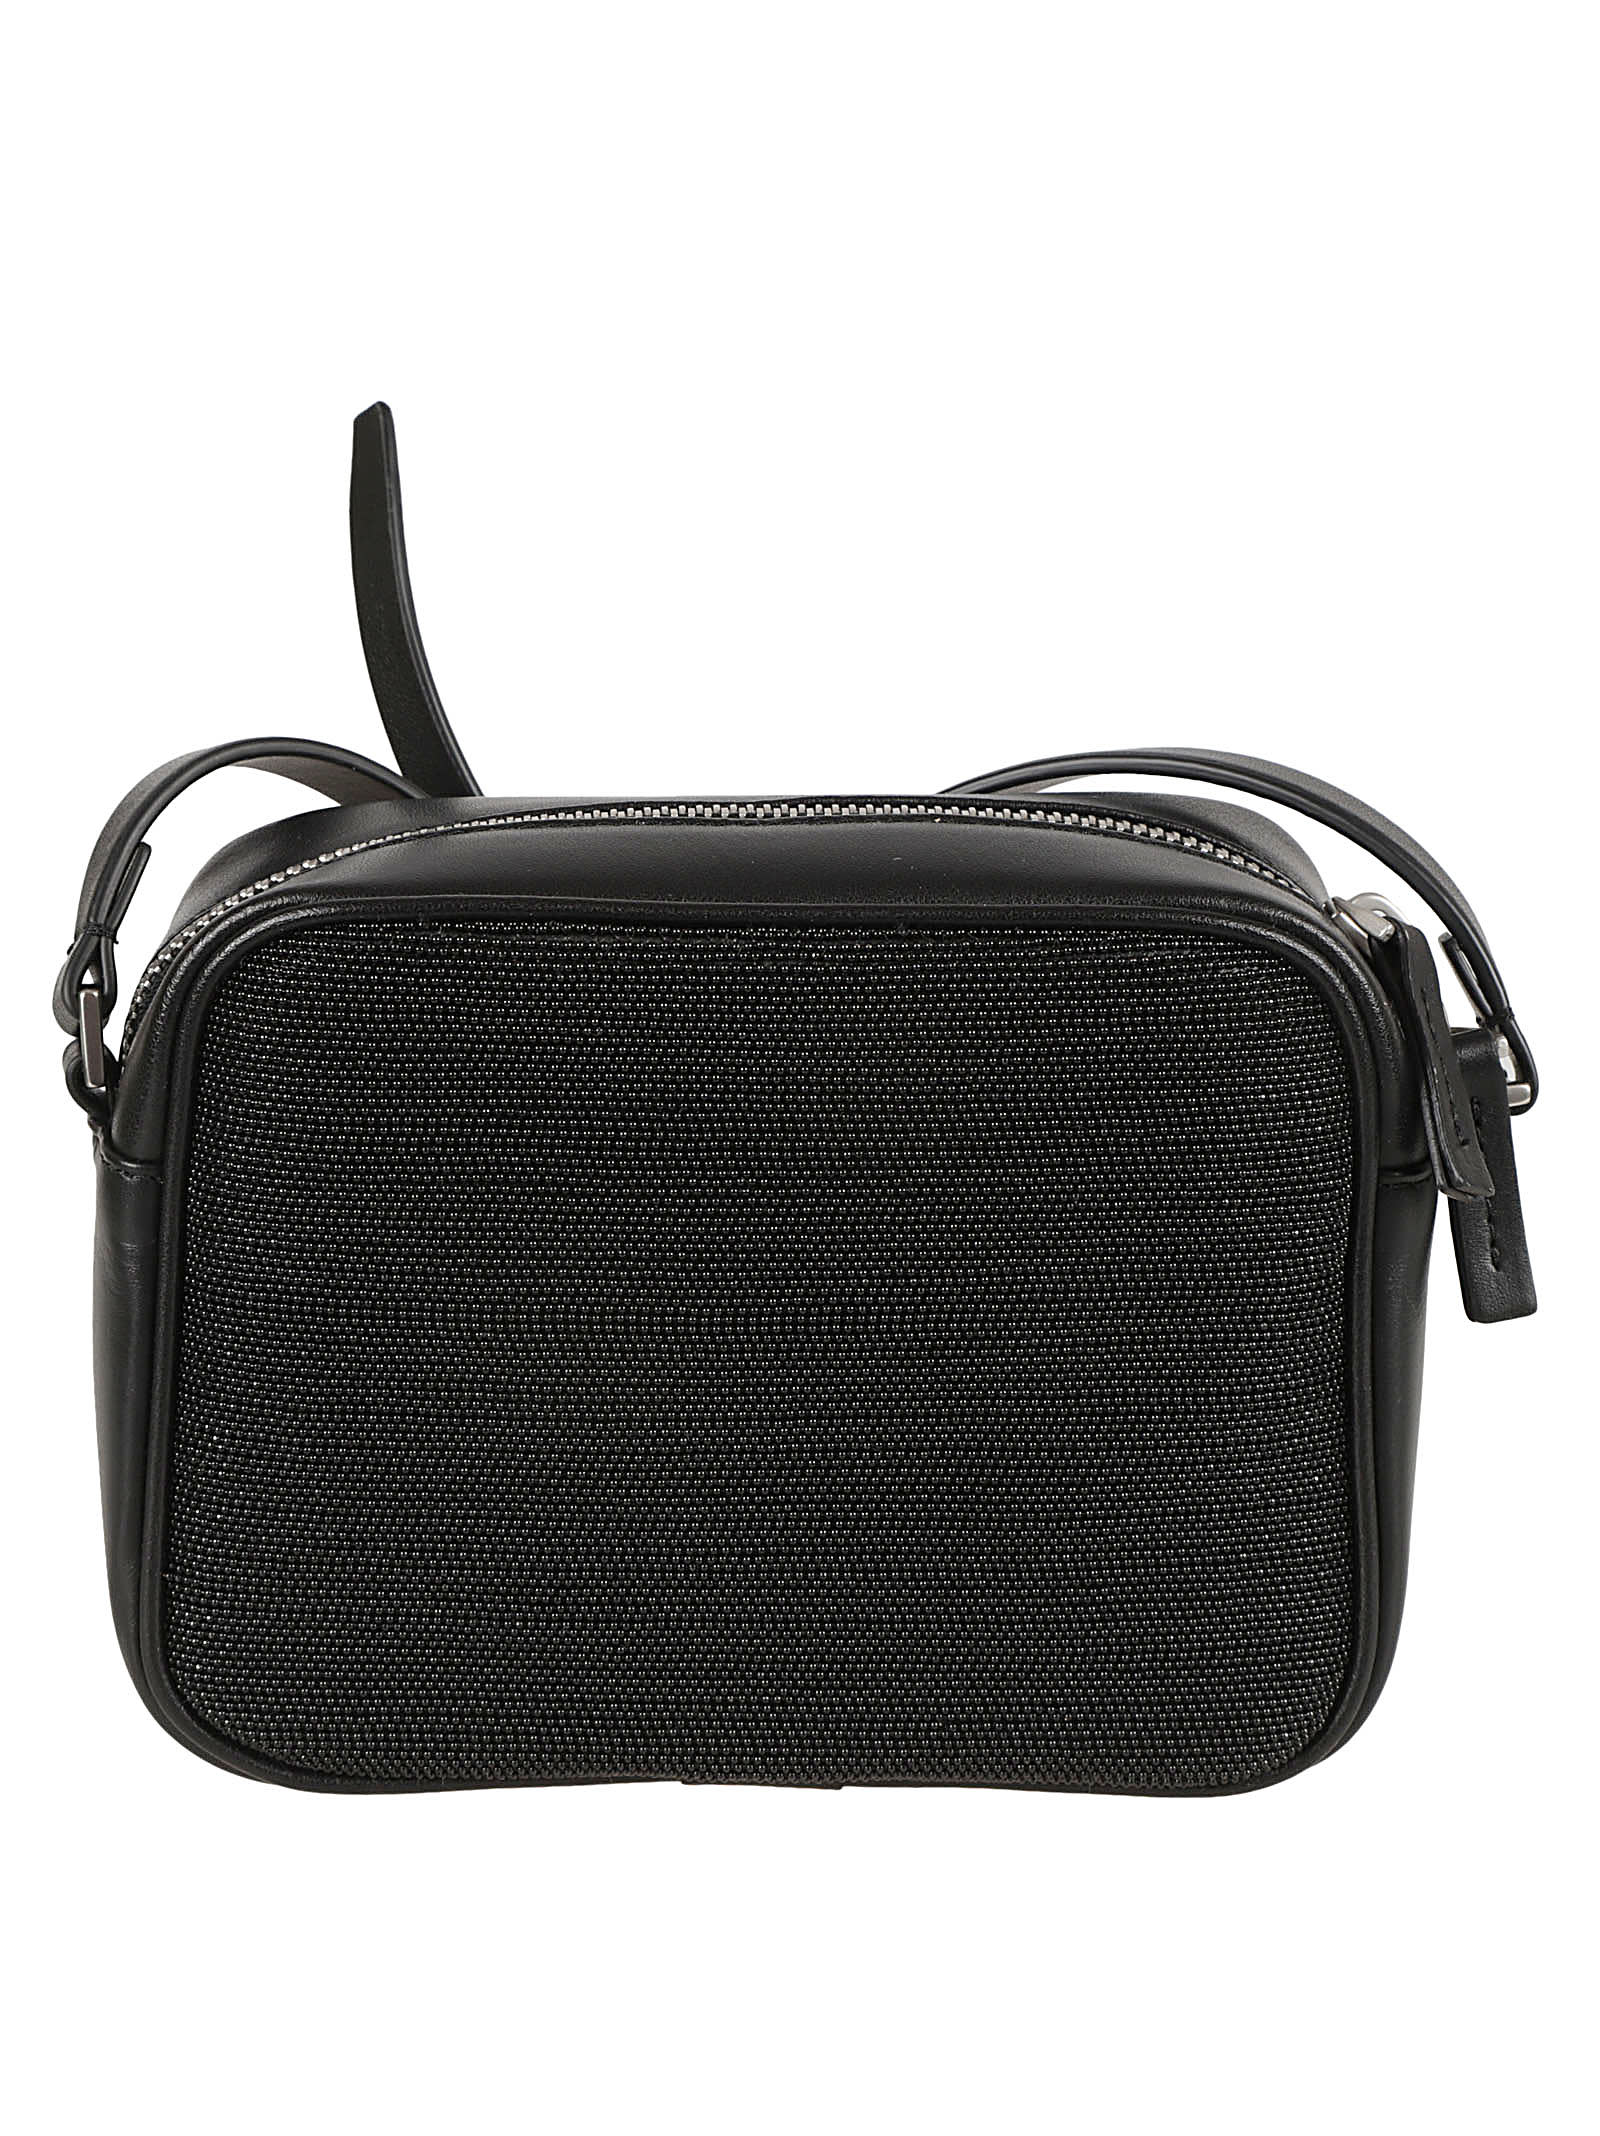 Leather Camera Shoulder Bag